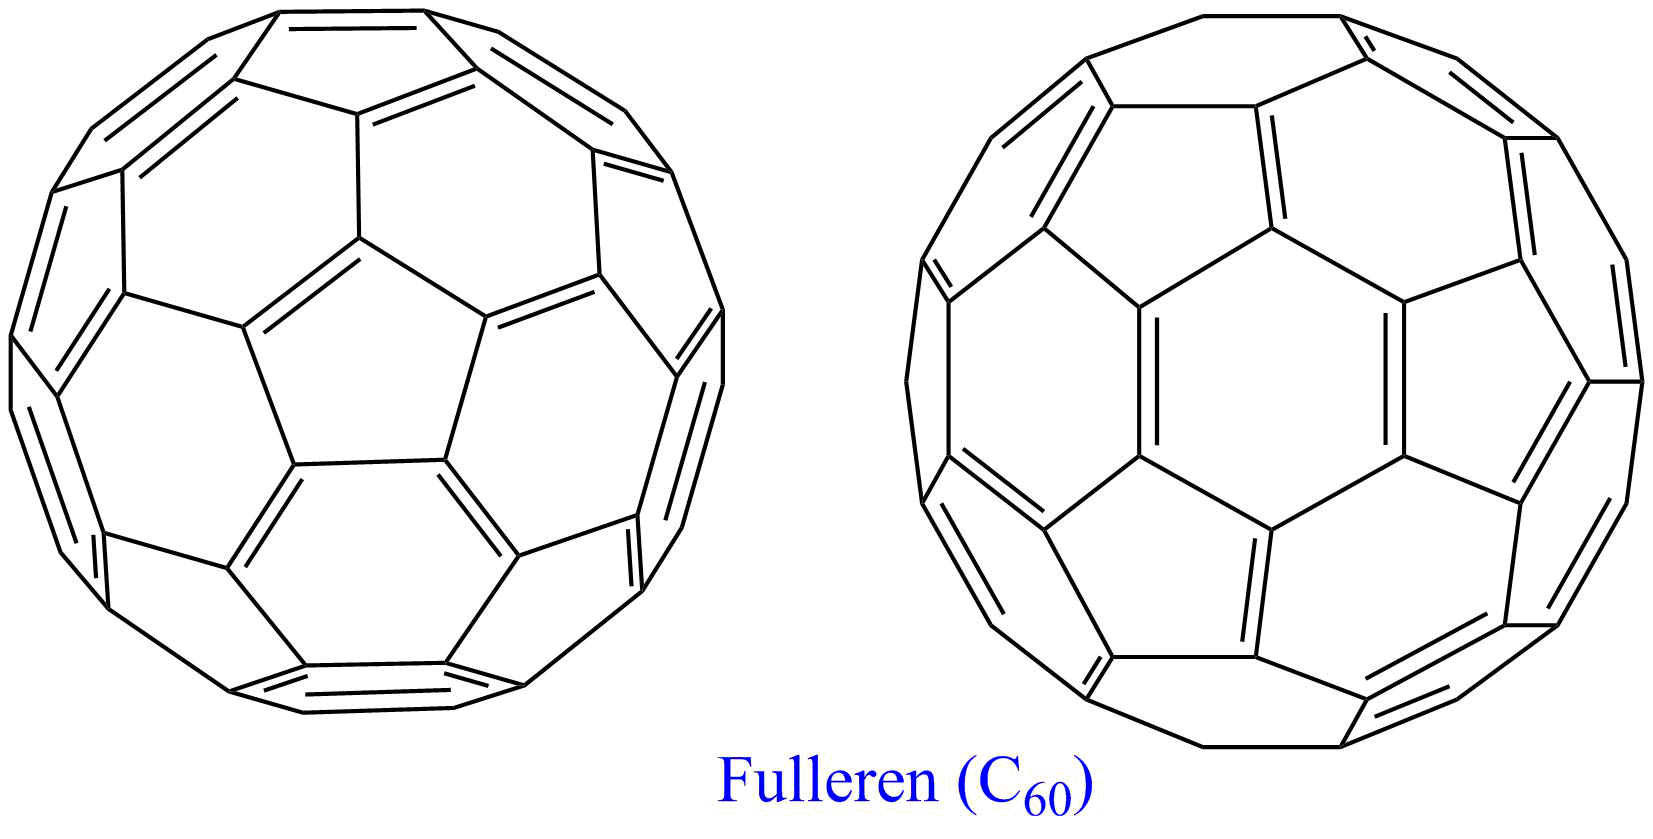 Fulleren